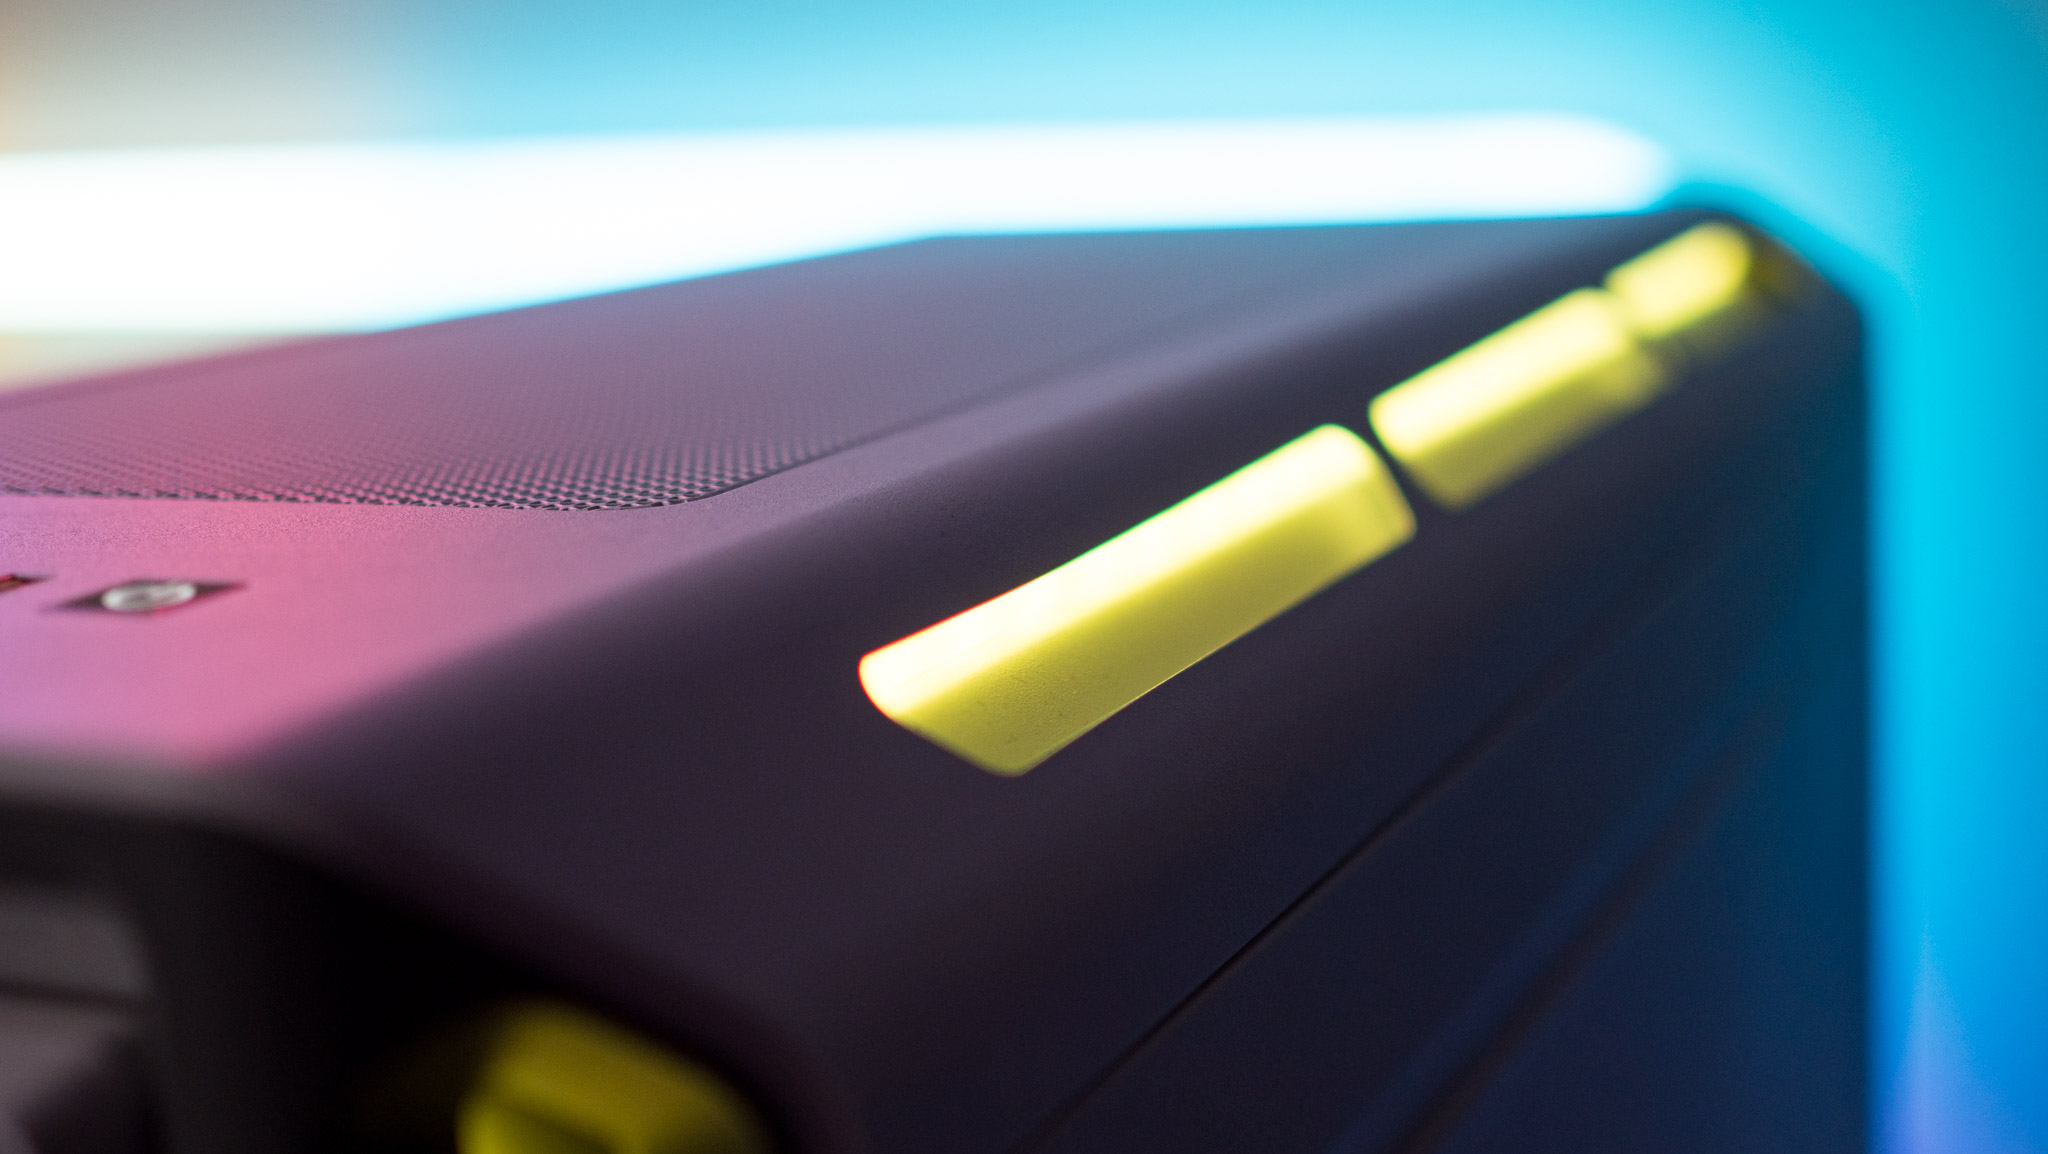 Corsair iCUE 5000T RGB's side view showcasing RGB lighting